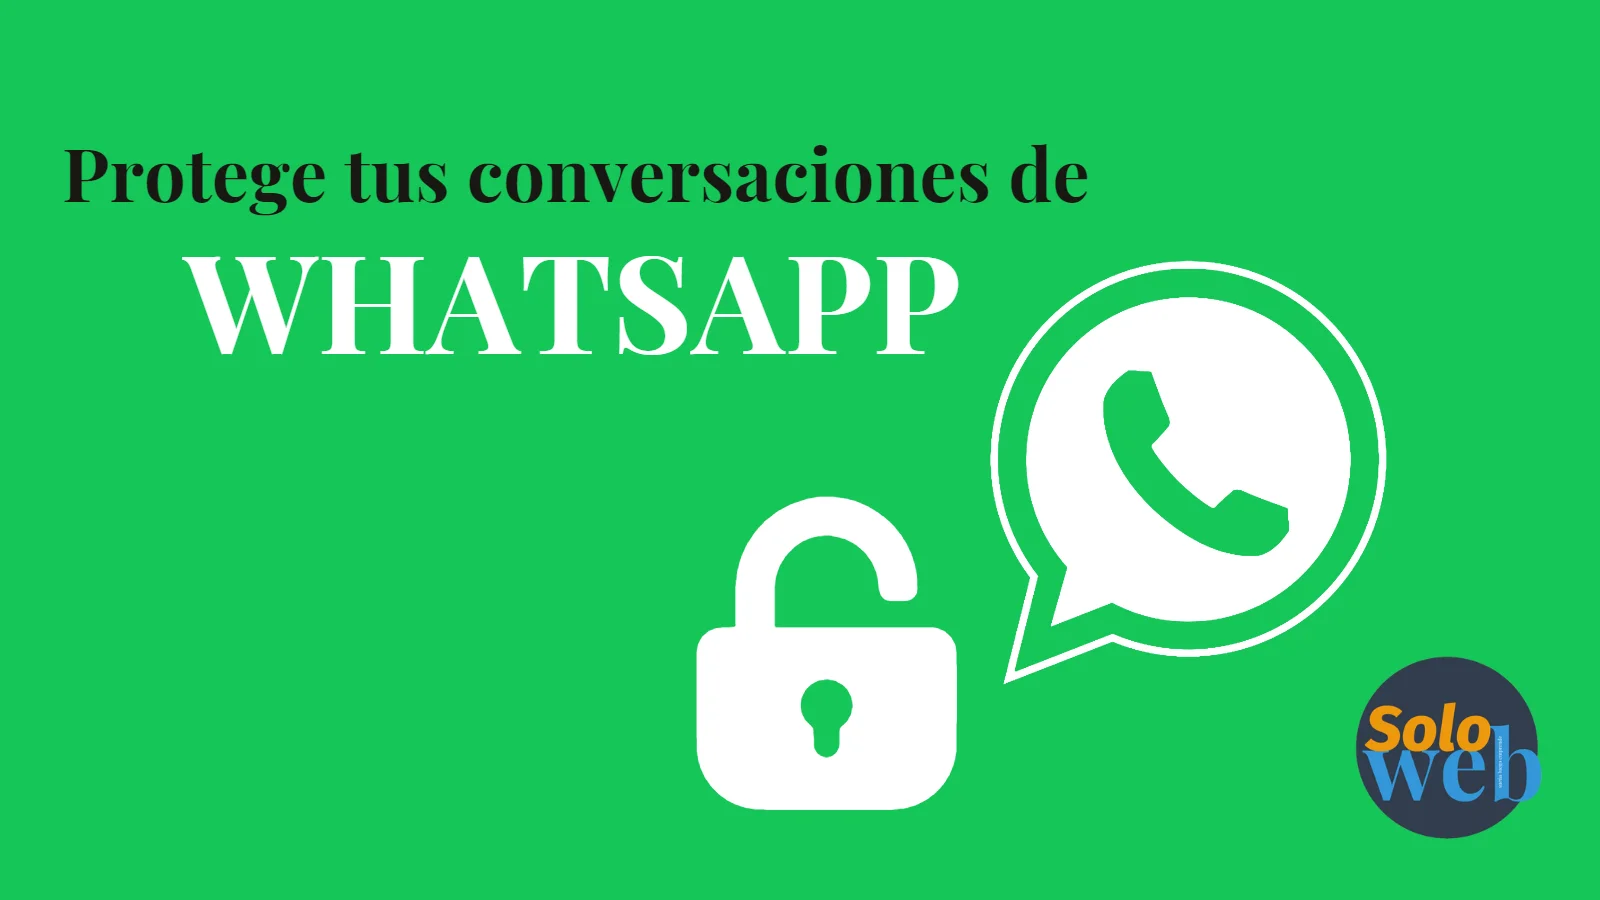 Protege tus conversaciones de whatsapp